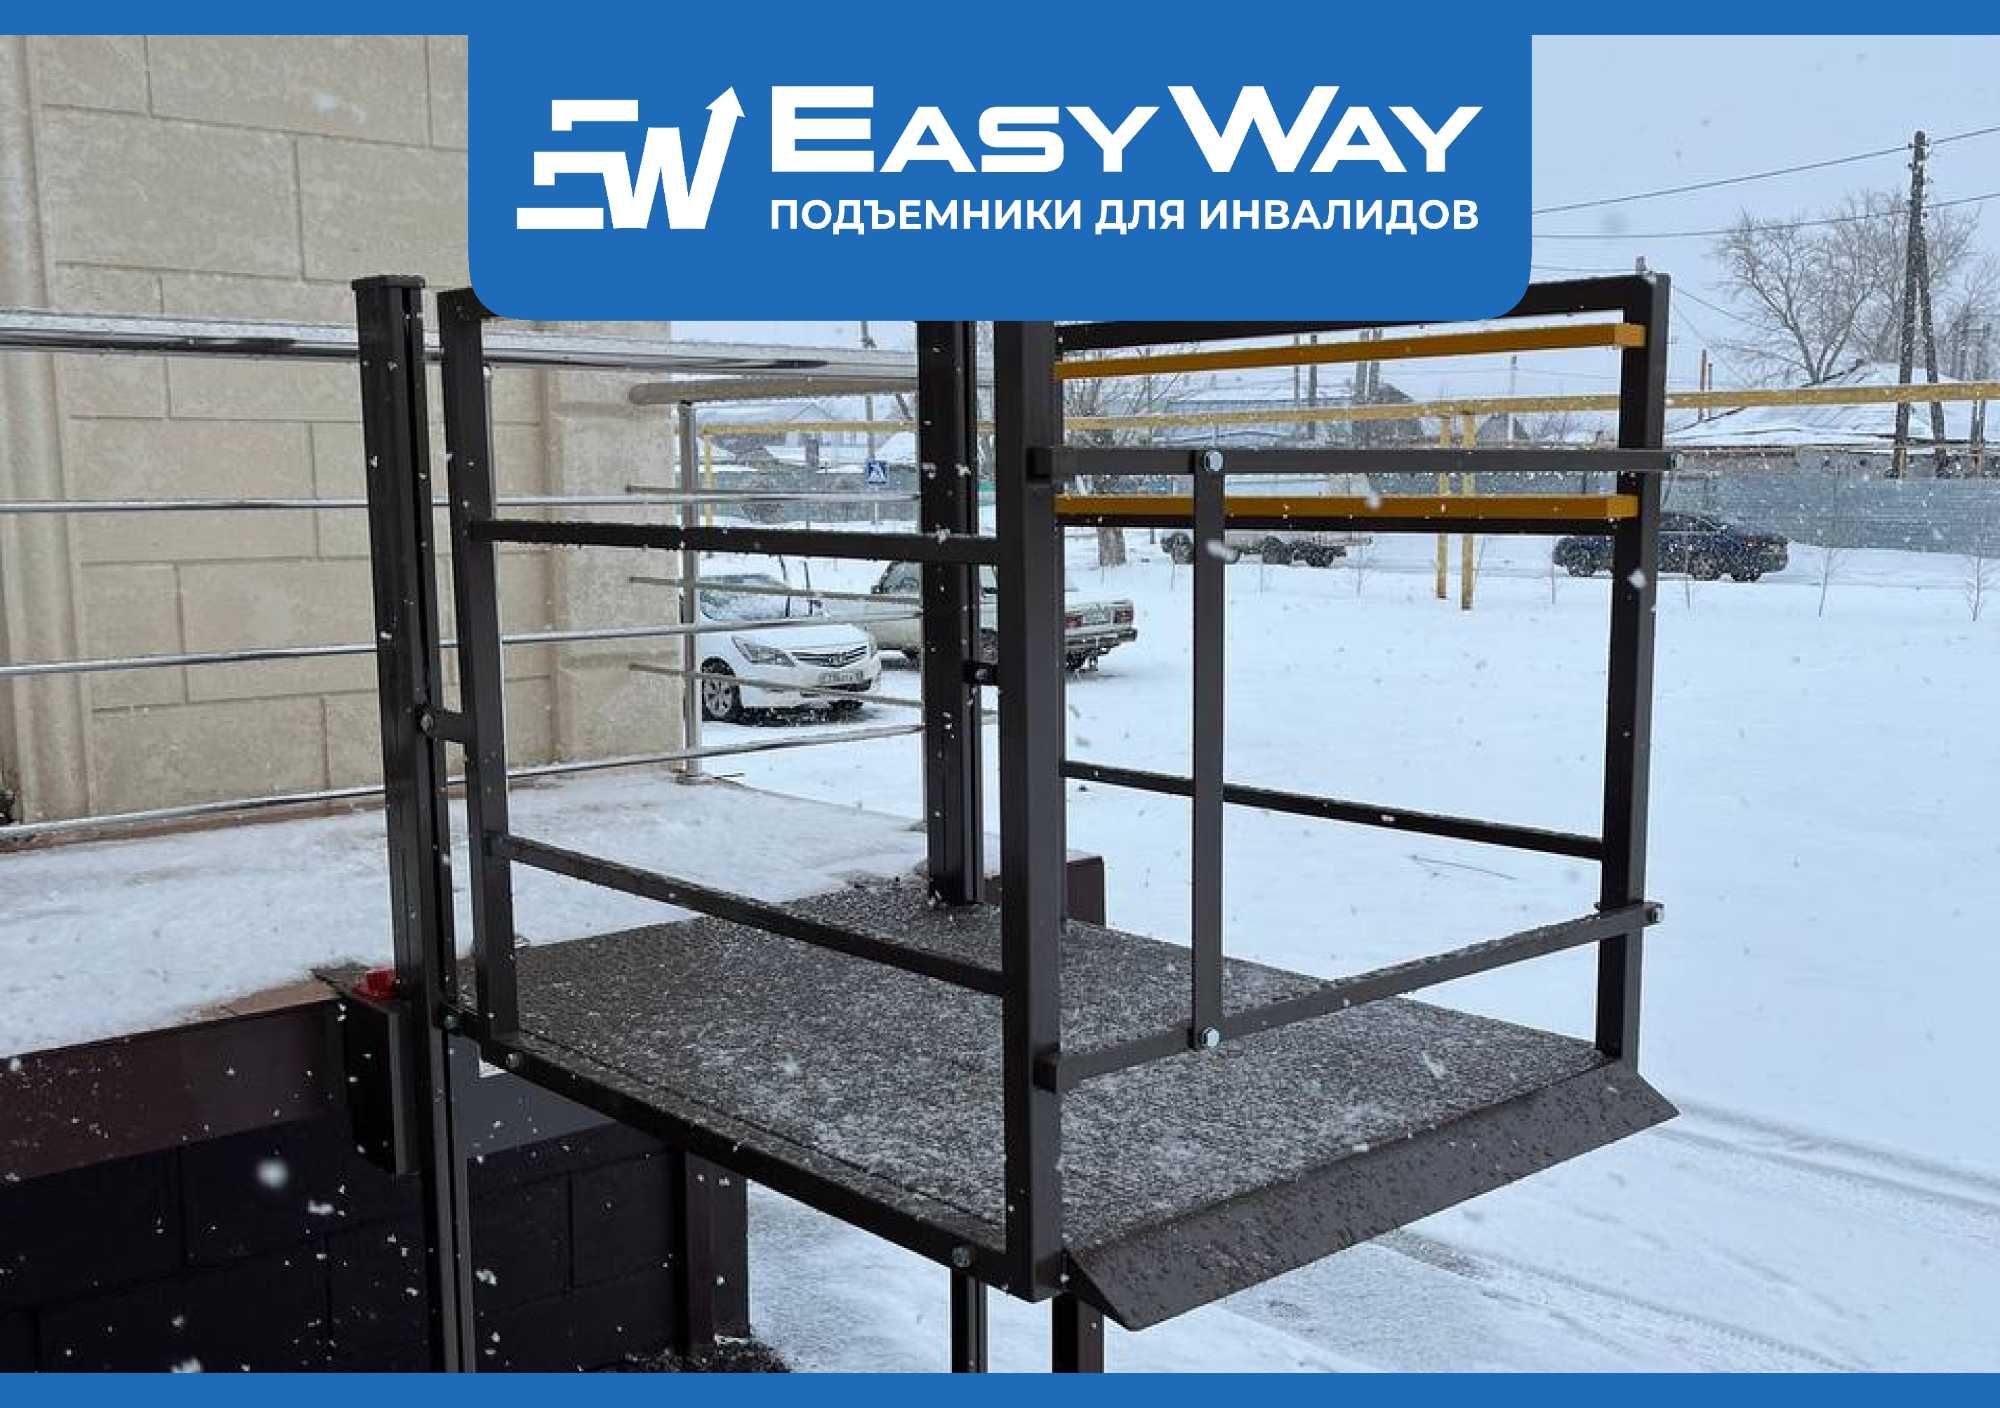 EasyWay: Подъёмники для инвалидов колясочников (г. Актобе)